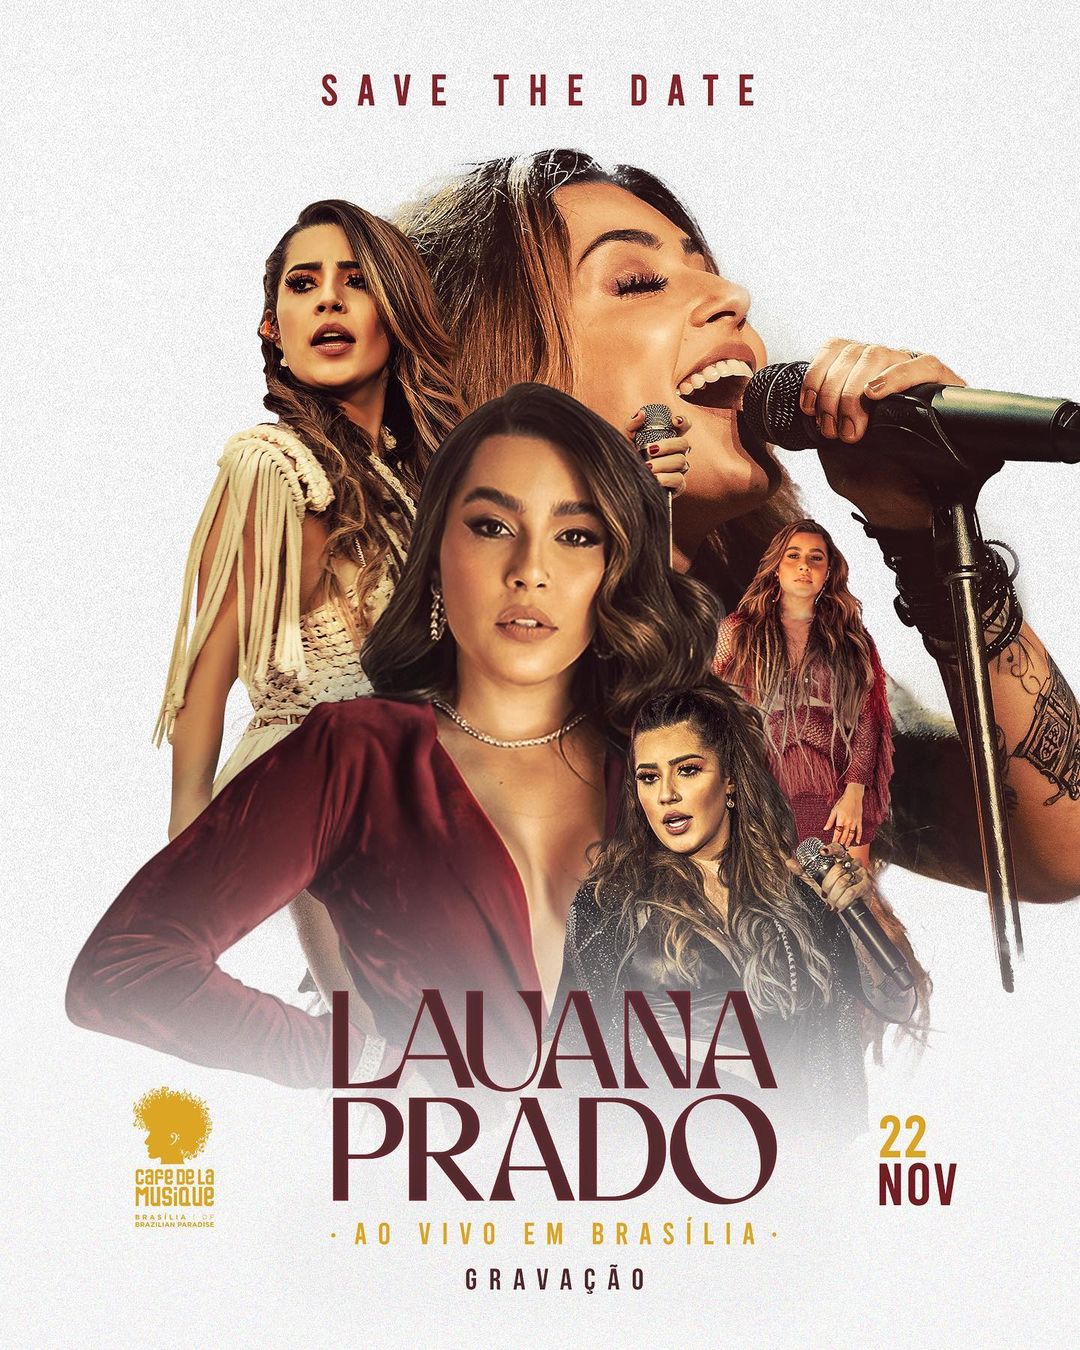 Lauana Prado grava novo DVD em Brasília com Sorriso Maroto, Xand Avião, Guilherme & Benuto e mais surpresas